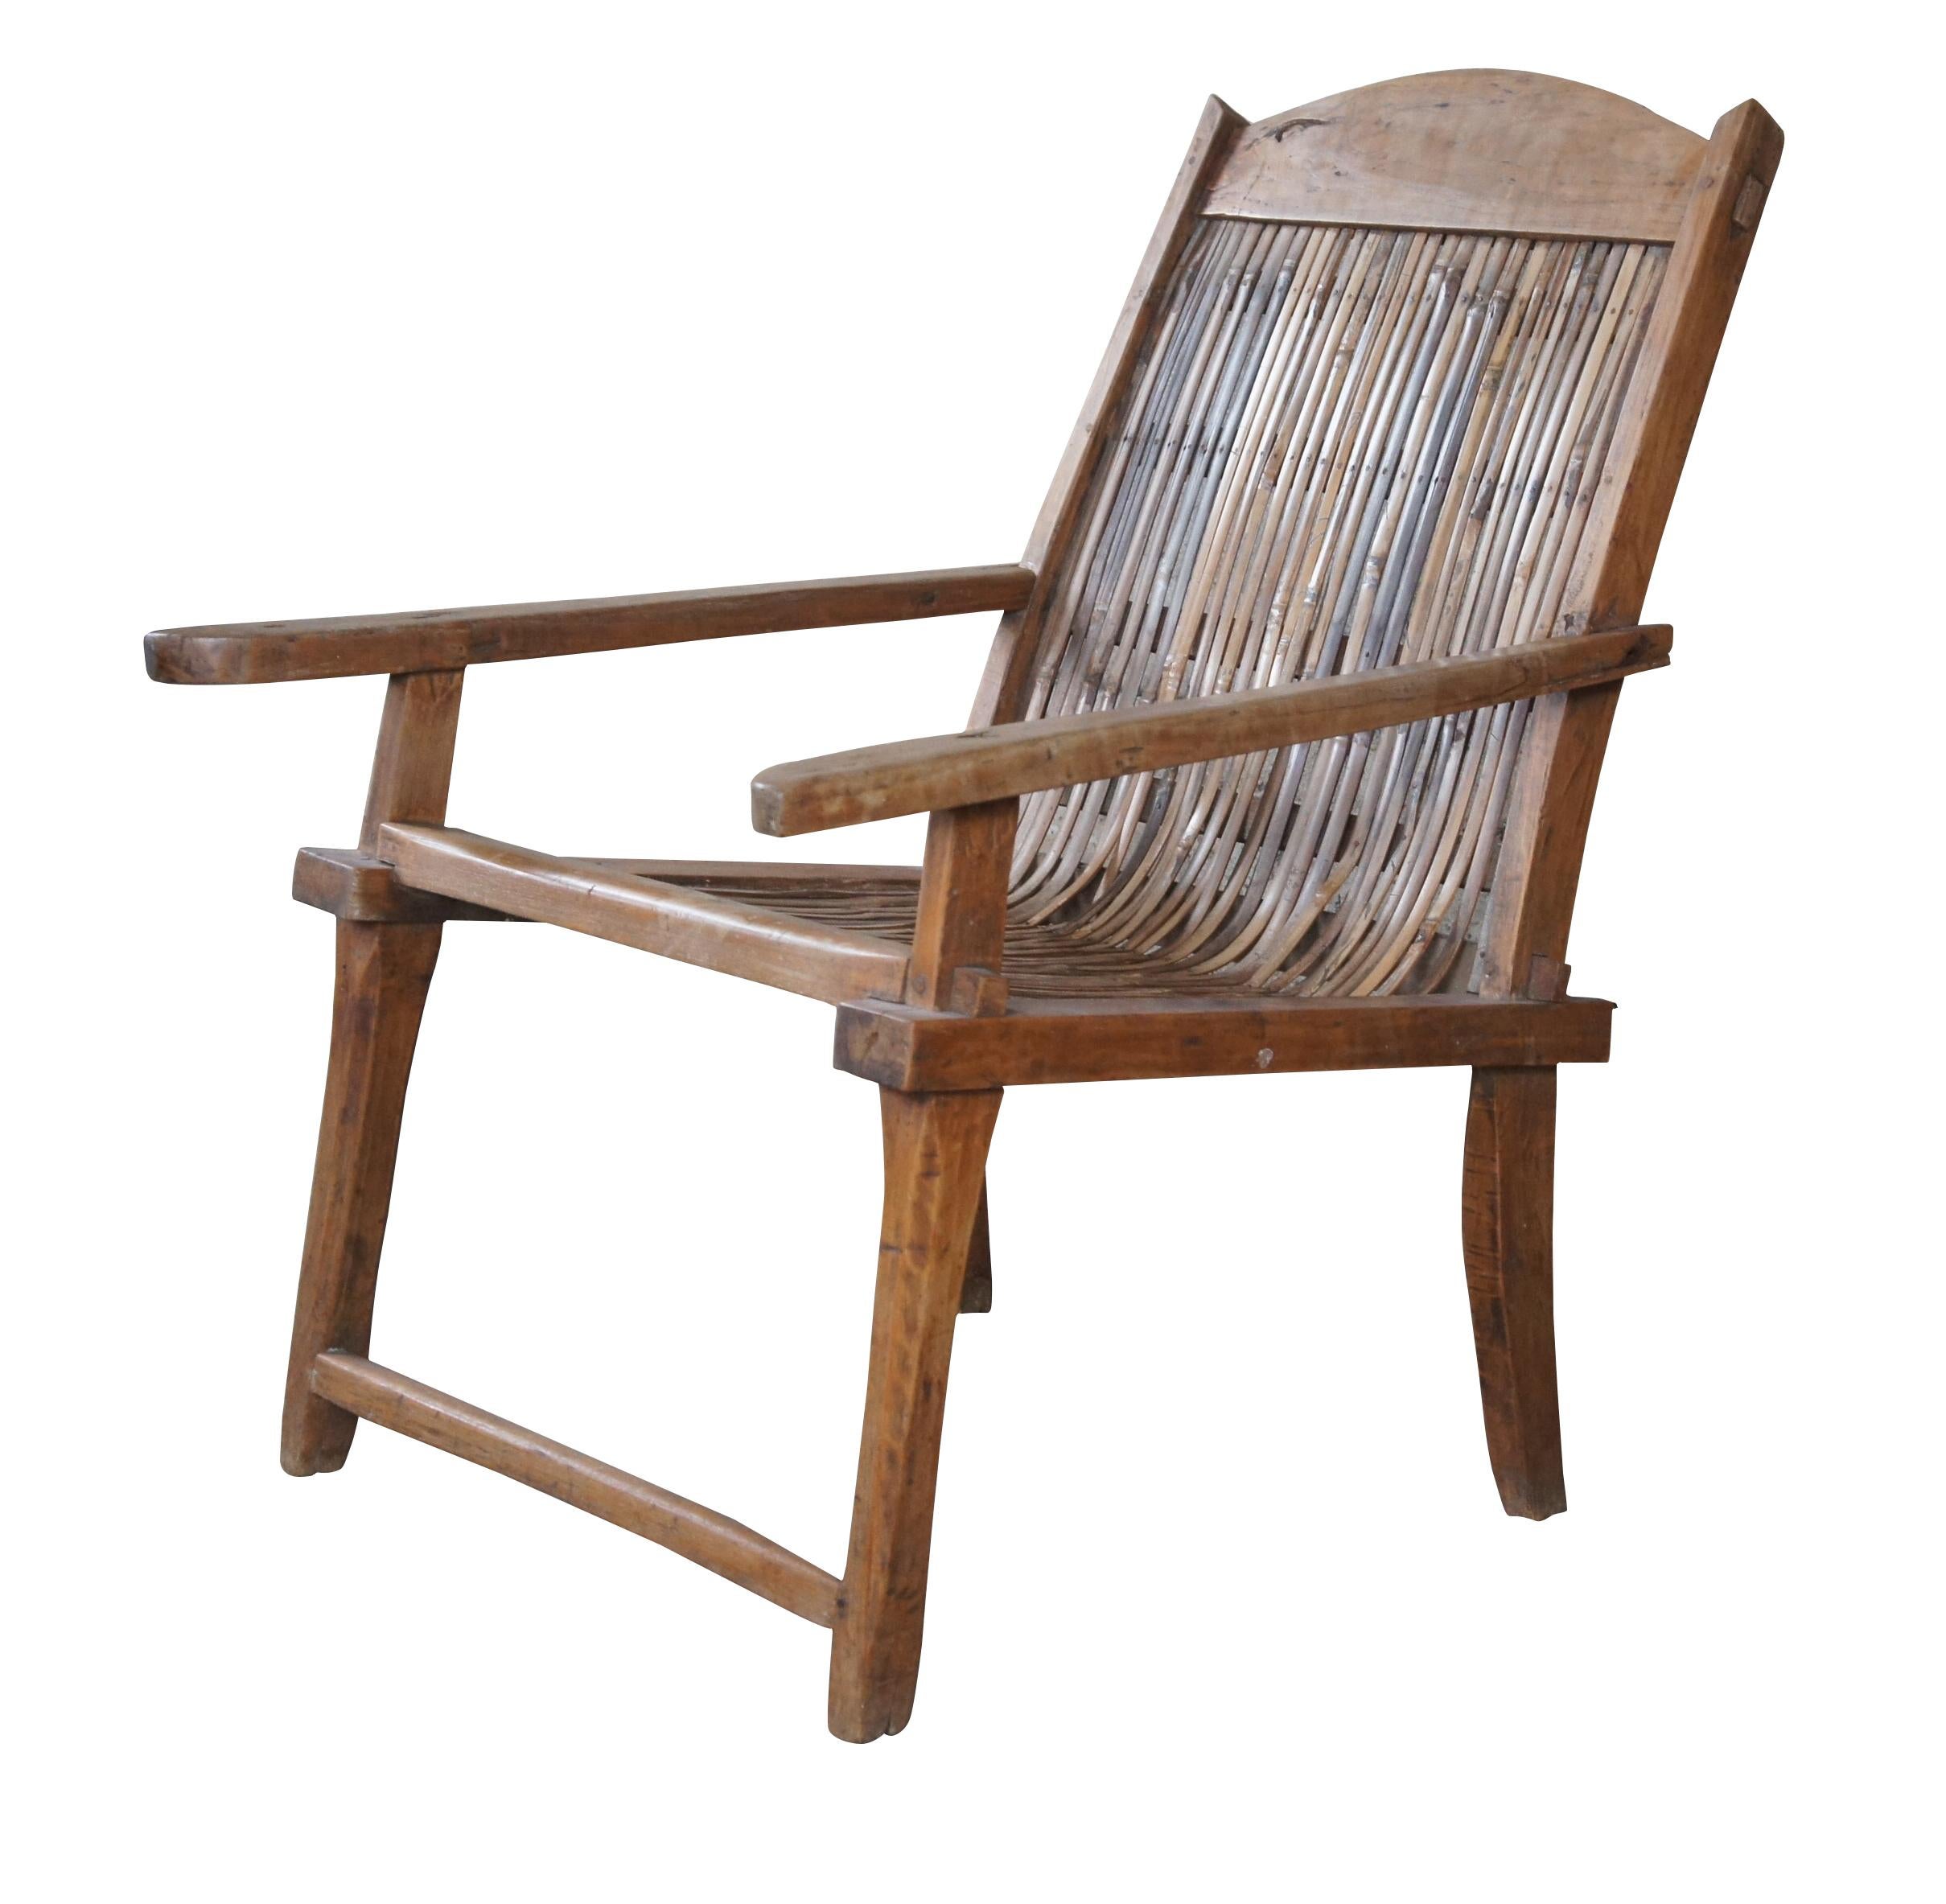 Chaise de plantation anglo-indienne Coloni du début du 20e siècle.  Fabriqué en teck avec un assemblage à tenons et mortaises, il présente un cadre décontracté et des bras longs.  Il est doté d'une barre d'appui incurvée et d'un siège en rotin plié